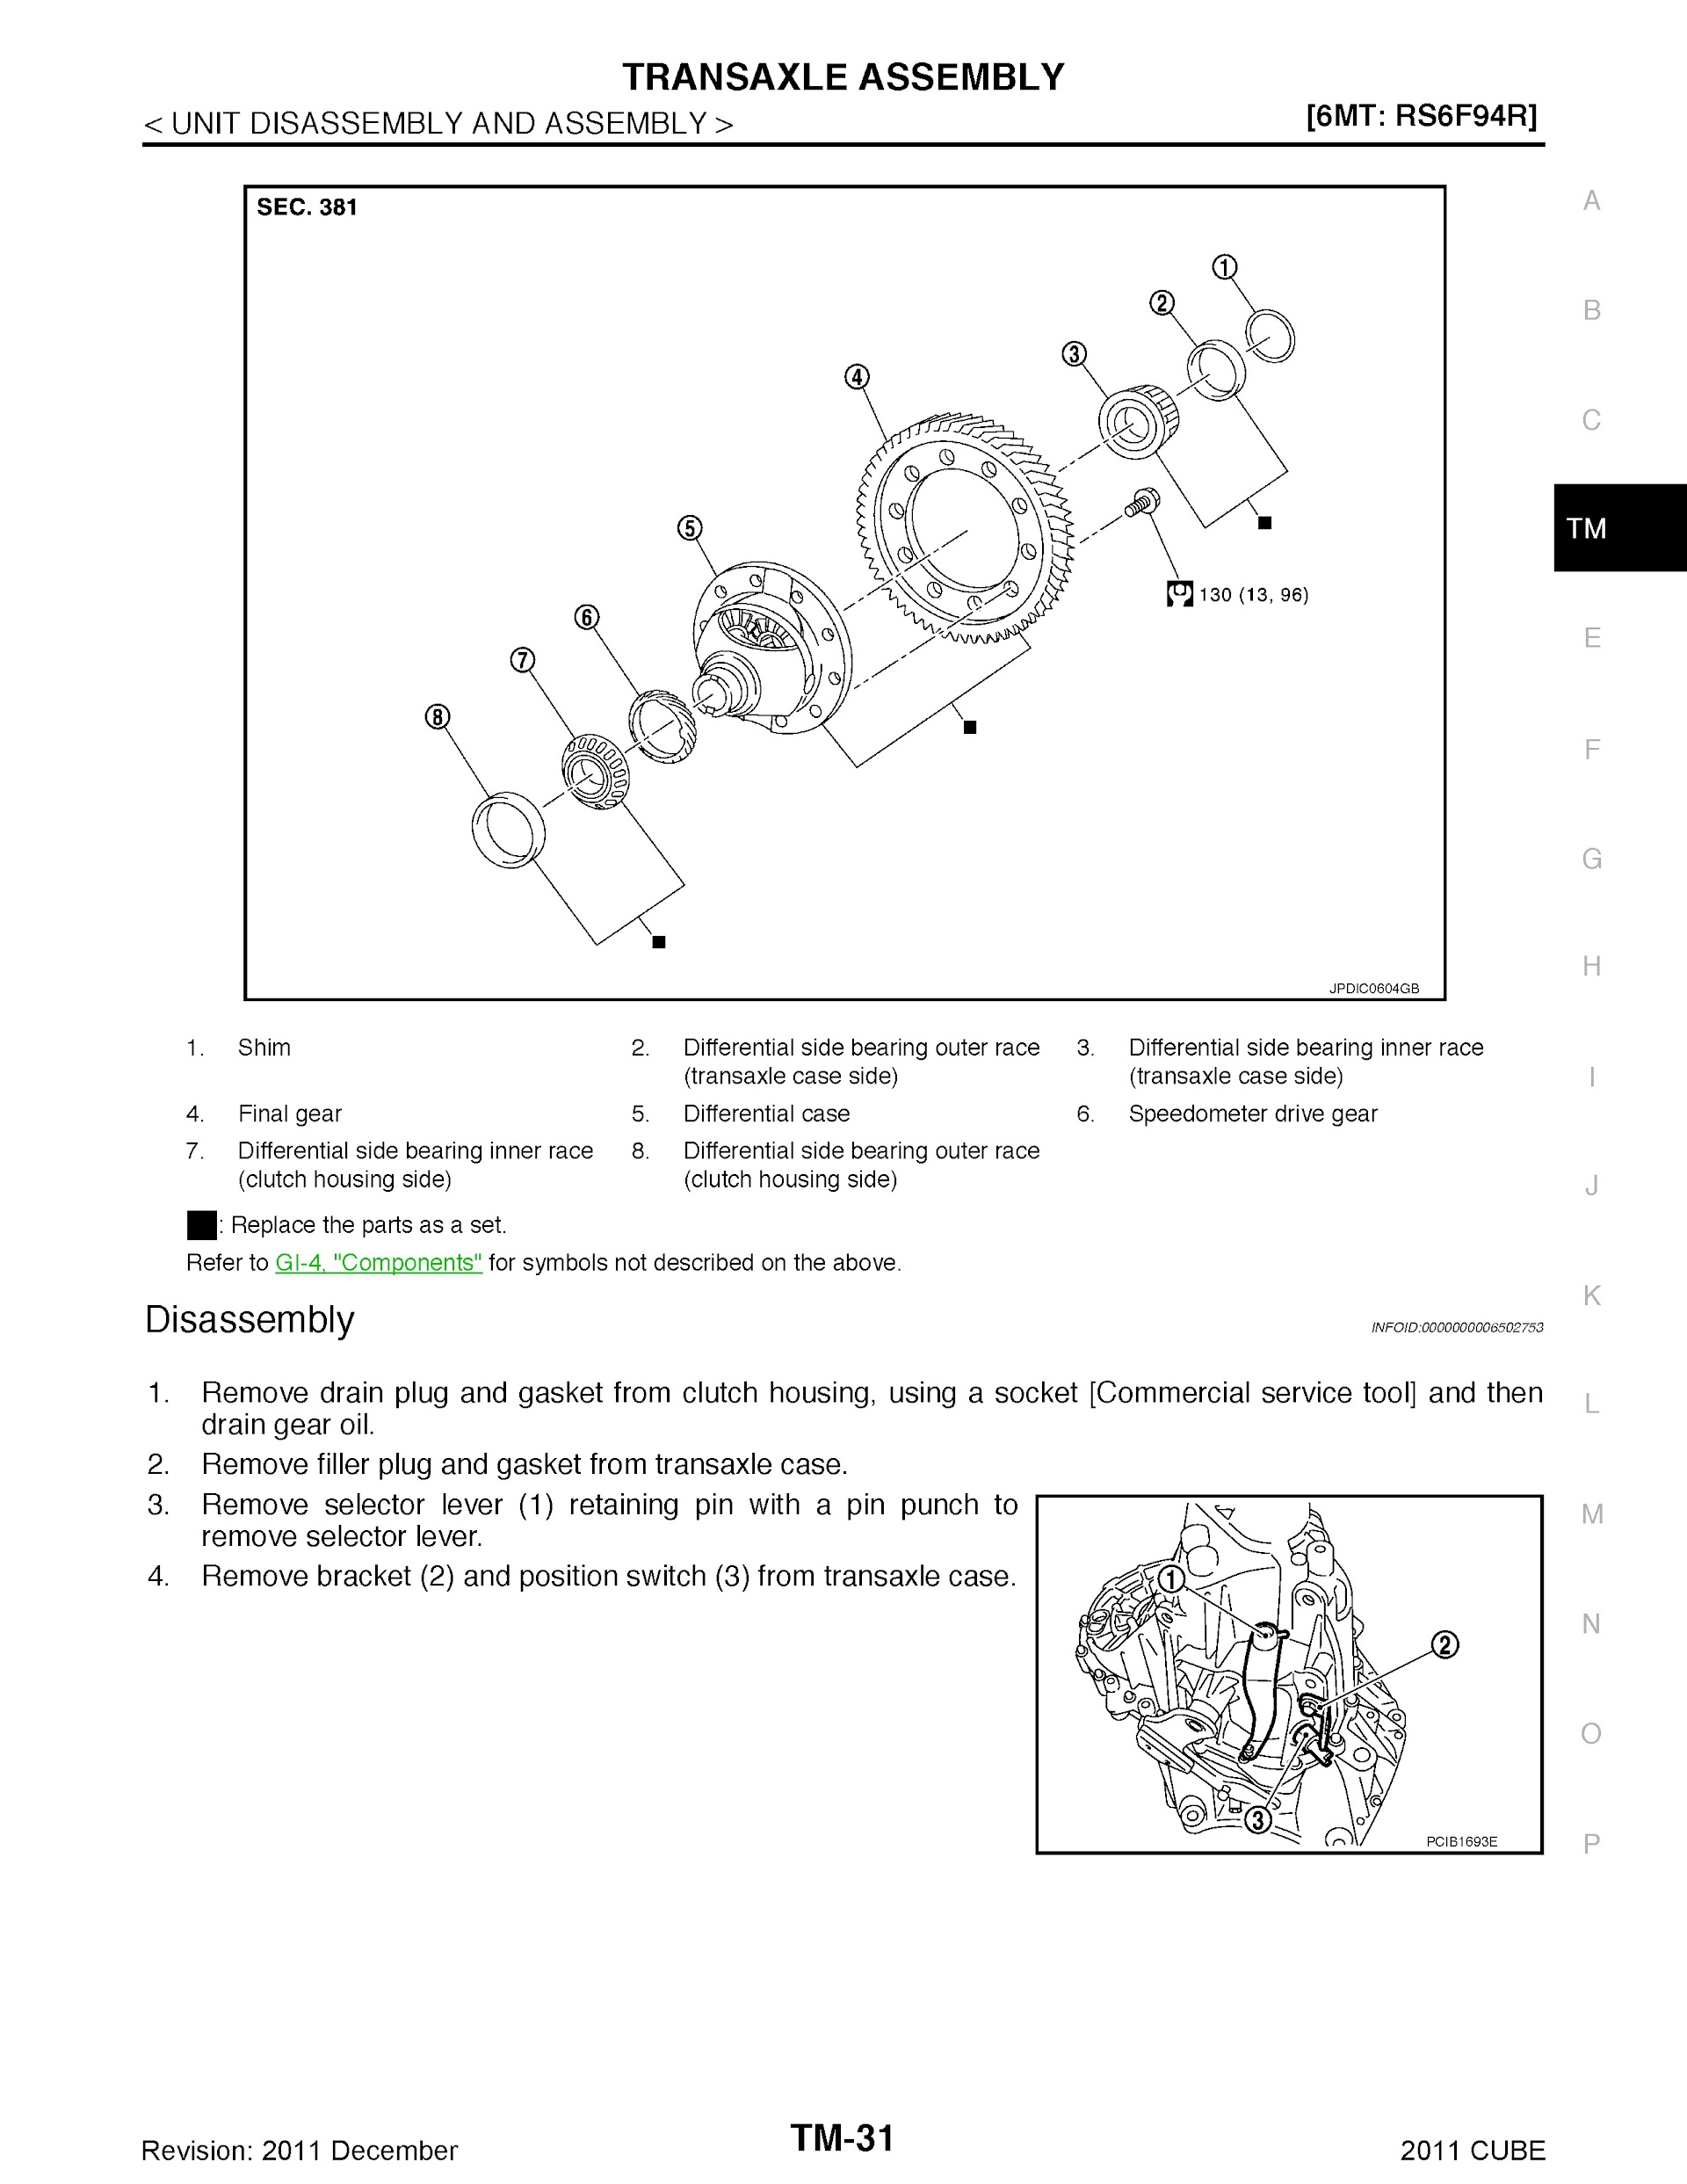 Download 2011 Nissan Cube Repair Manual.